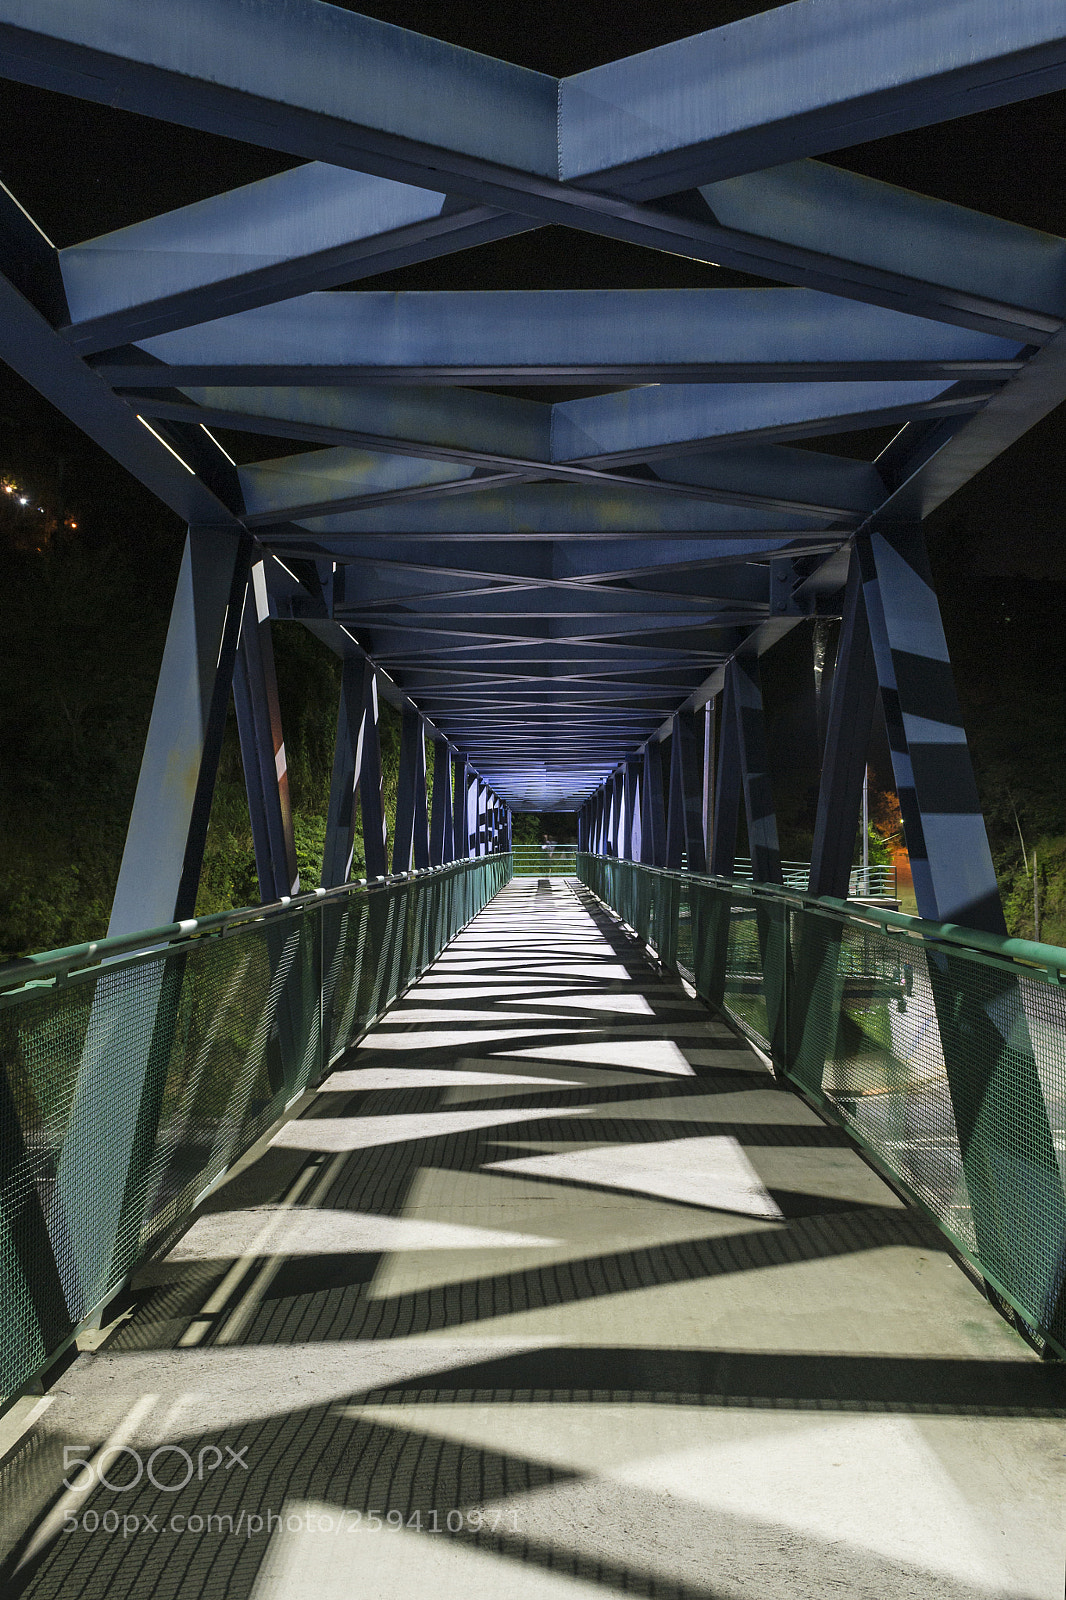 Nikon D3100 sample photo. Pedestrian overpass at night photography